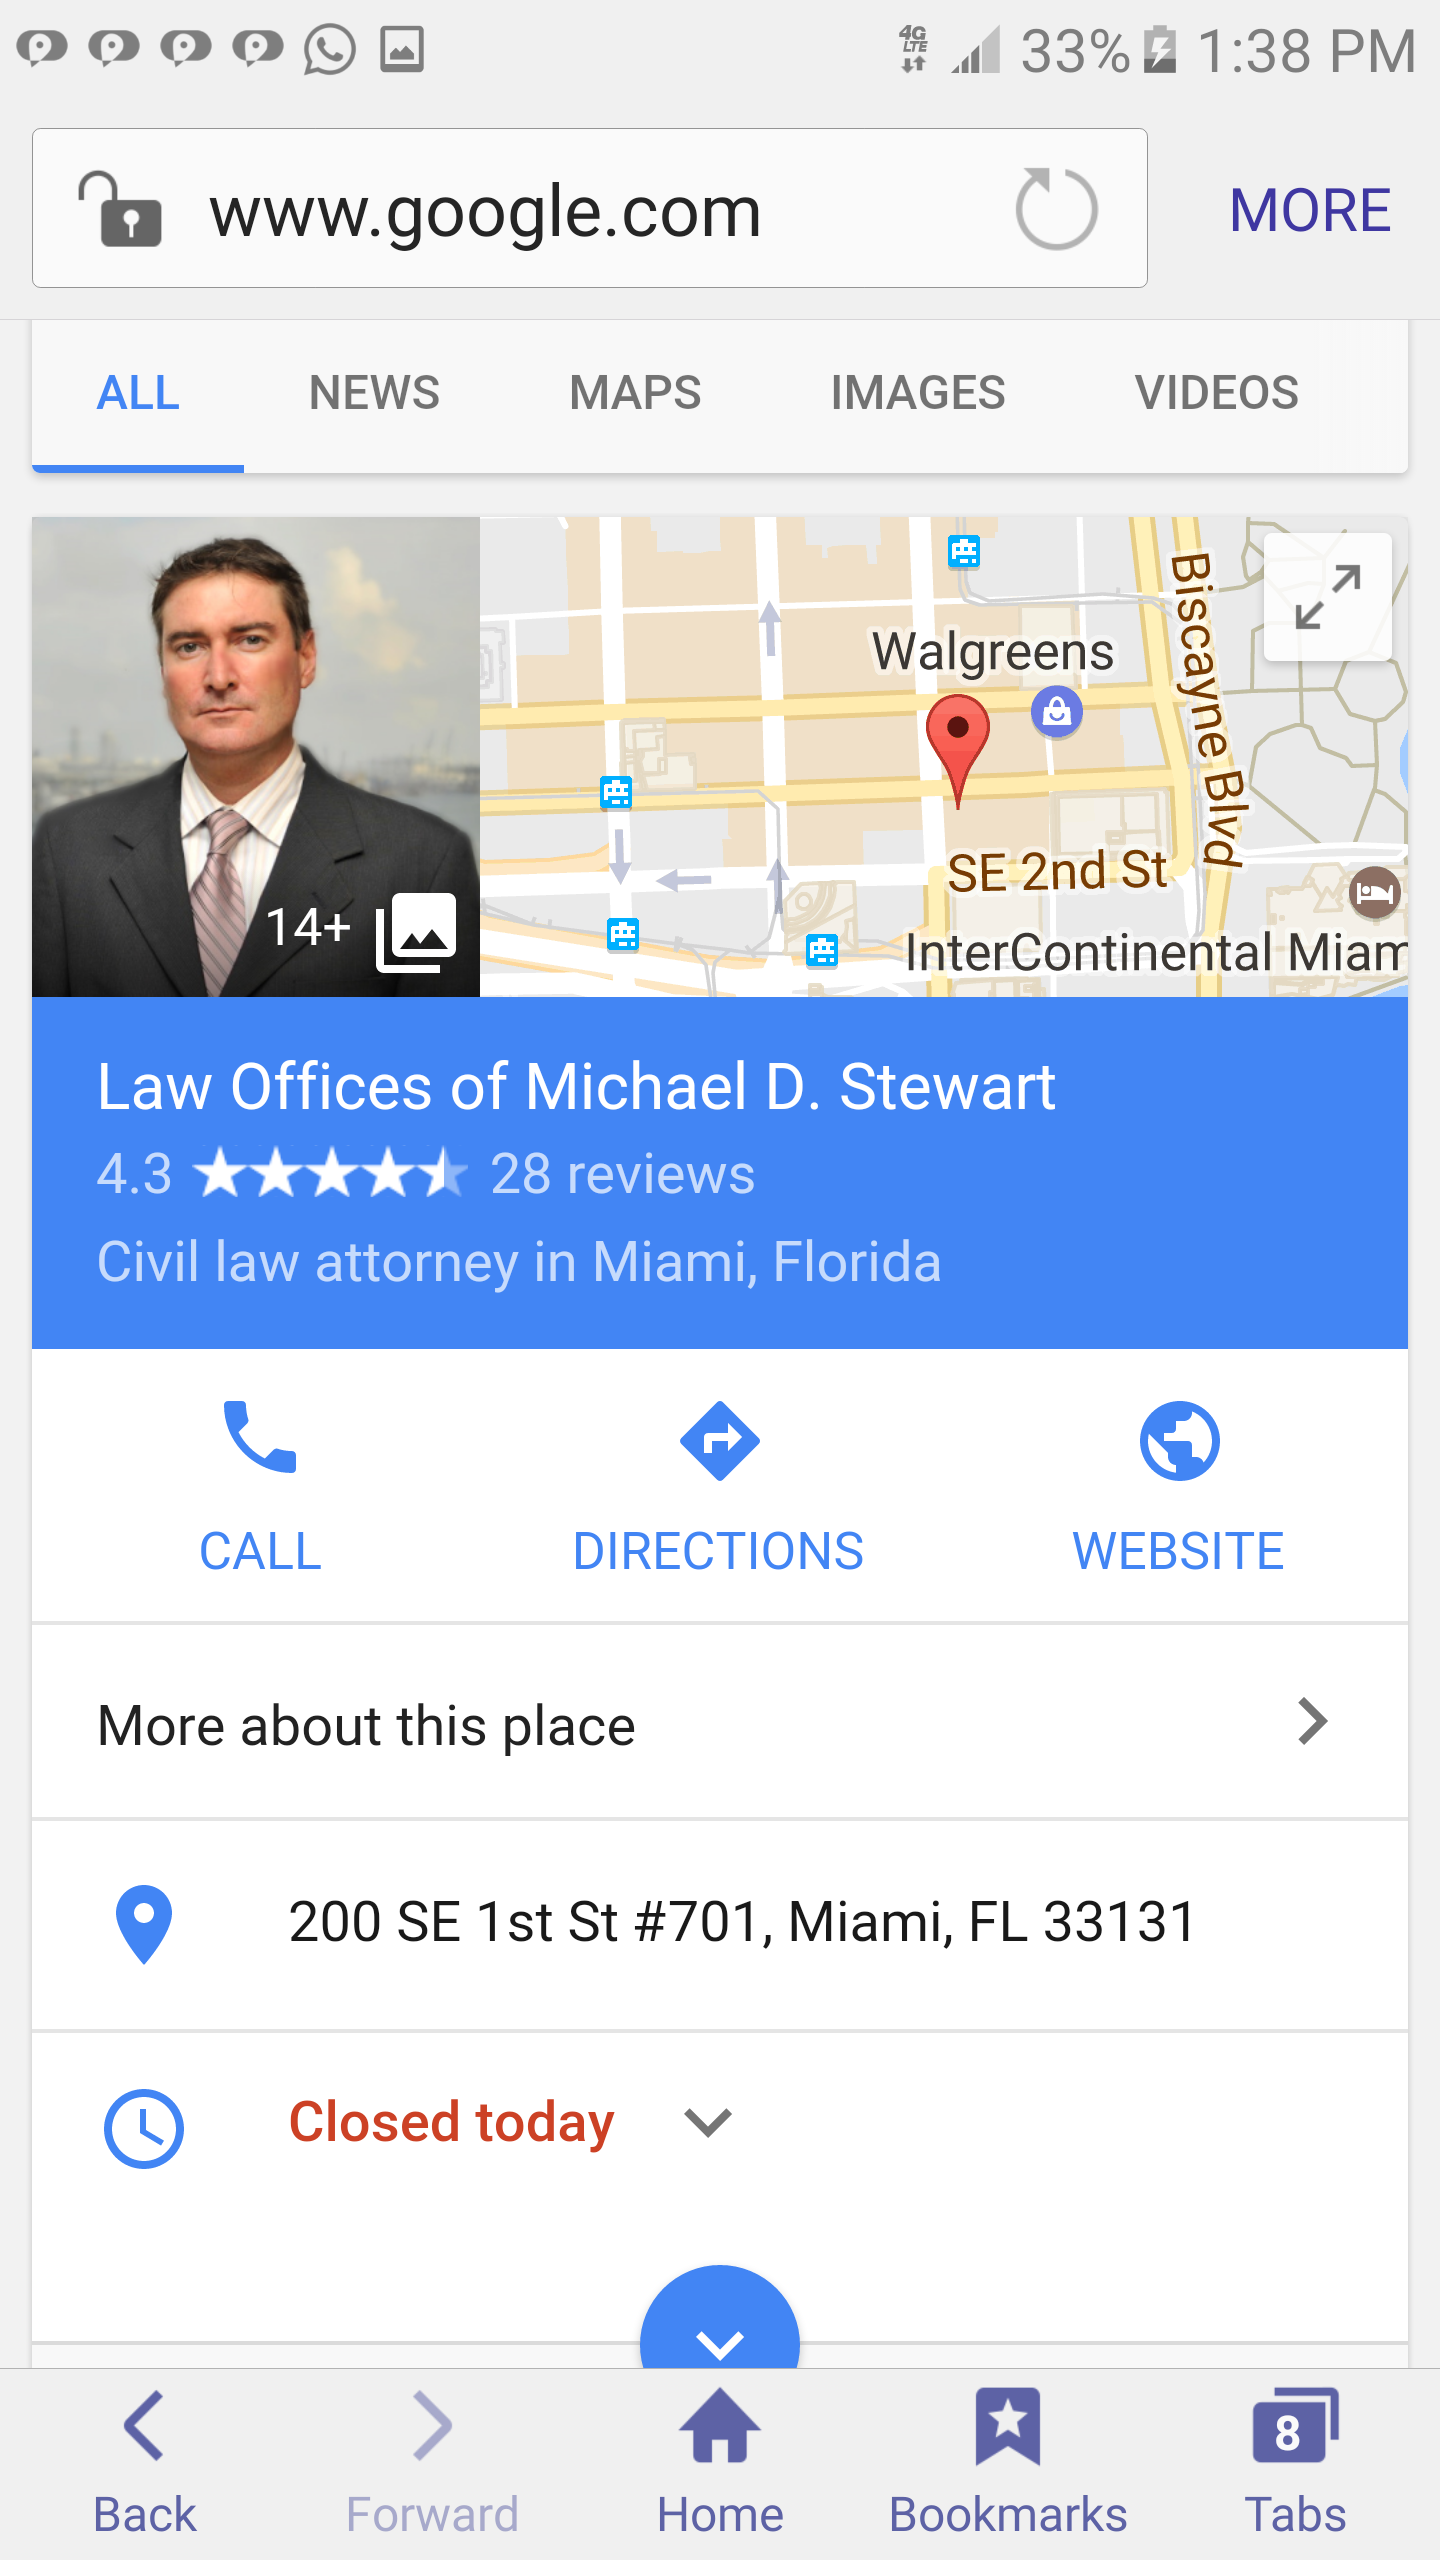 Michael D Stwart 150 SE 2nd Ave. Suite 1000. Miami. Fl 33131